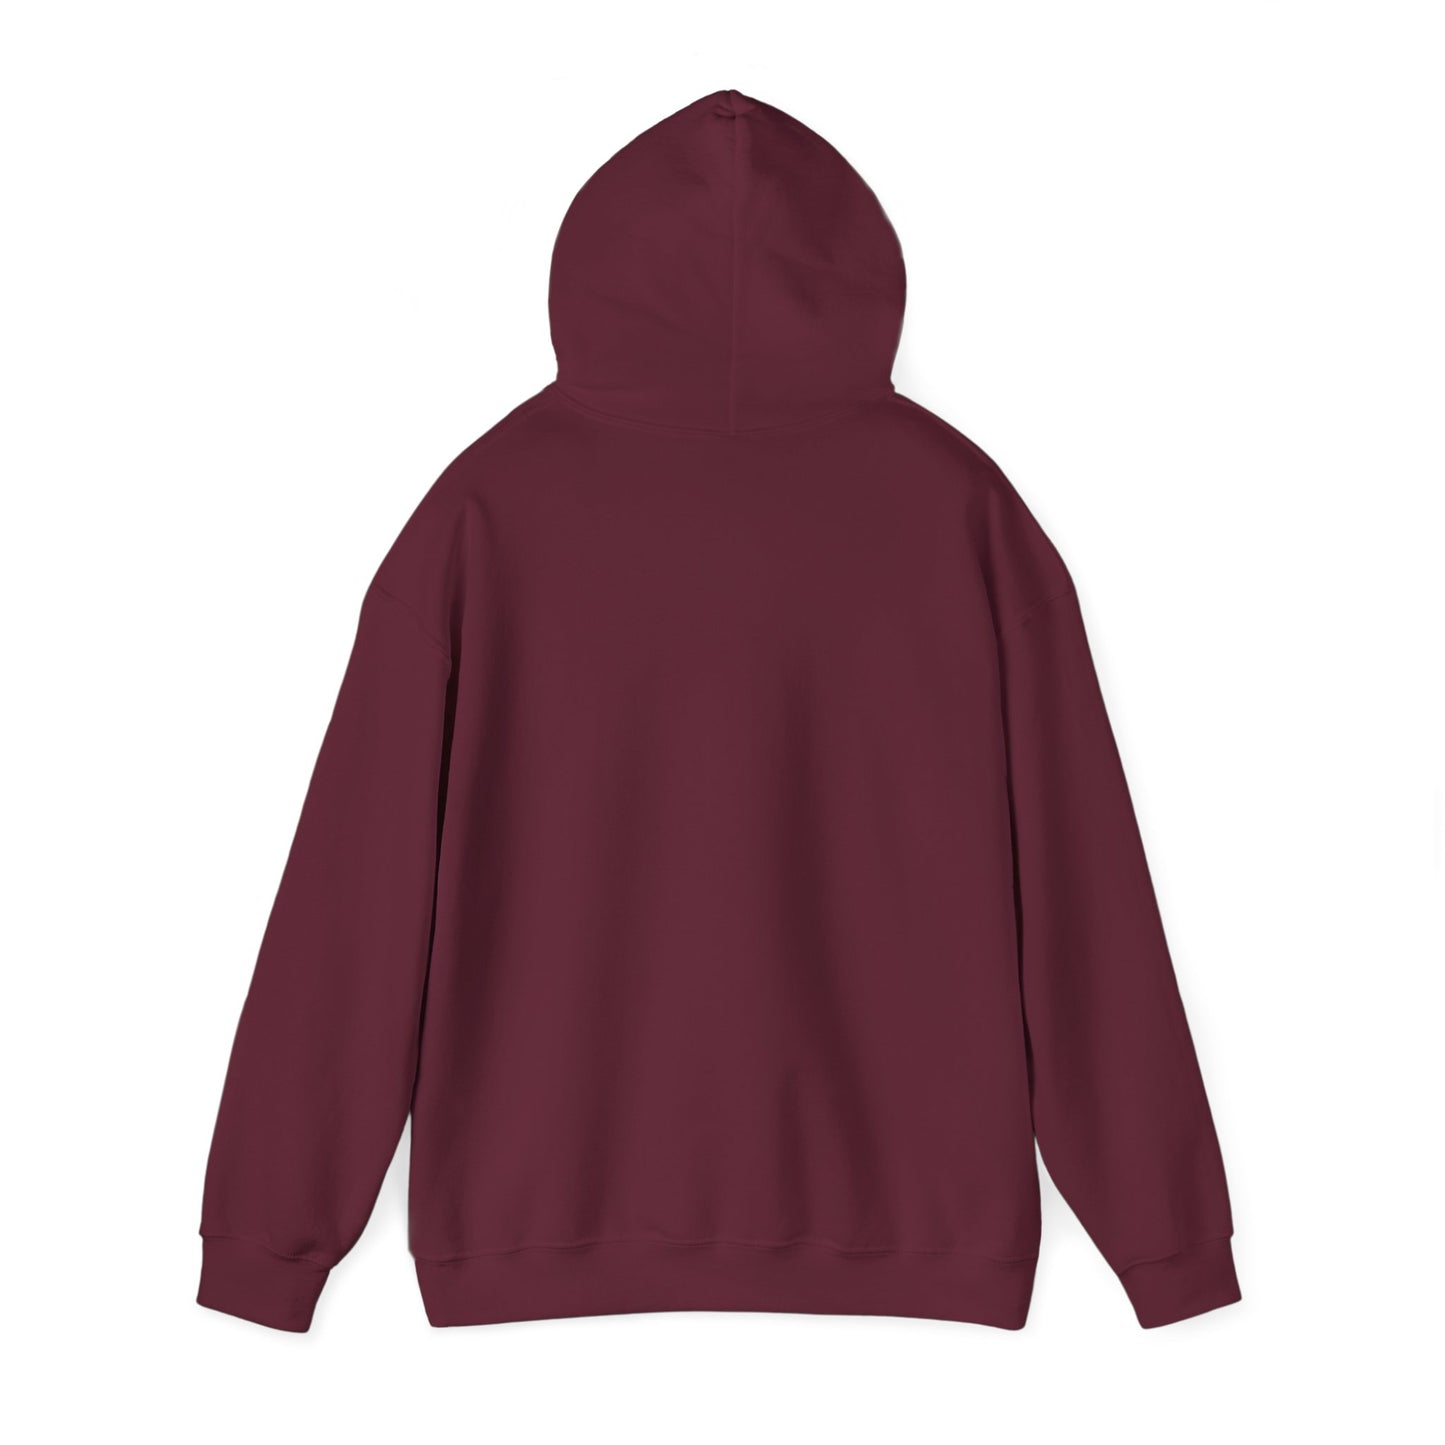 affordable hoodies